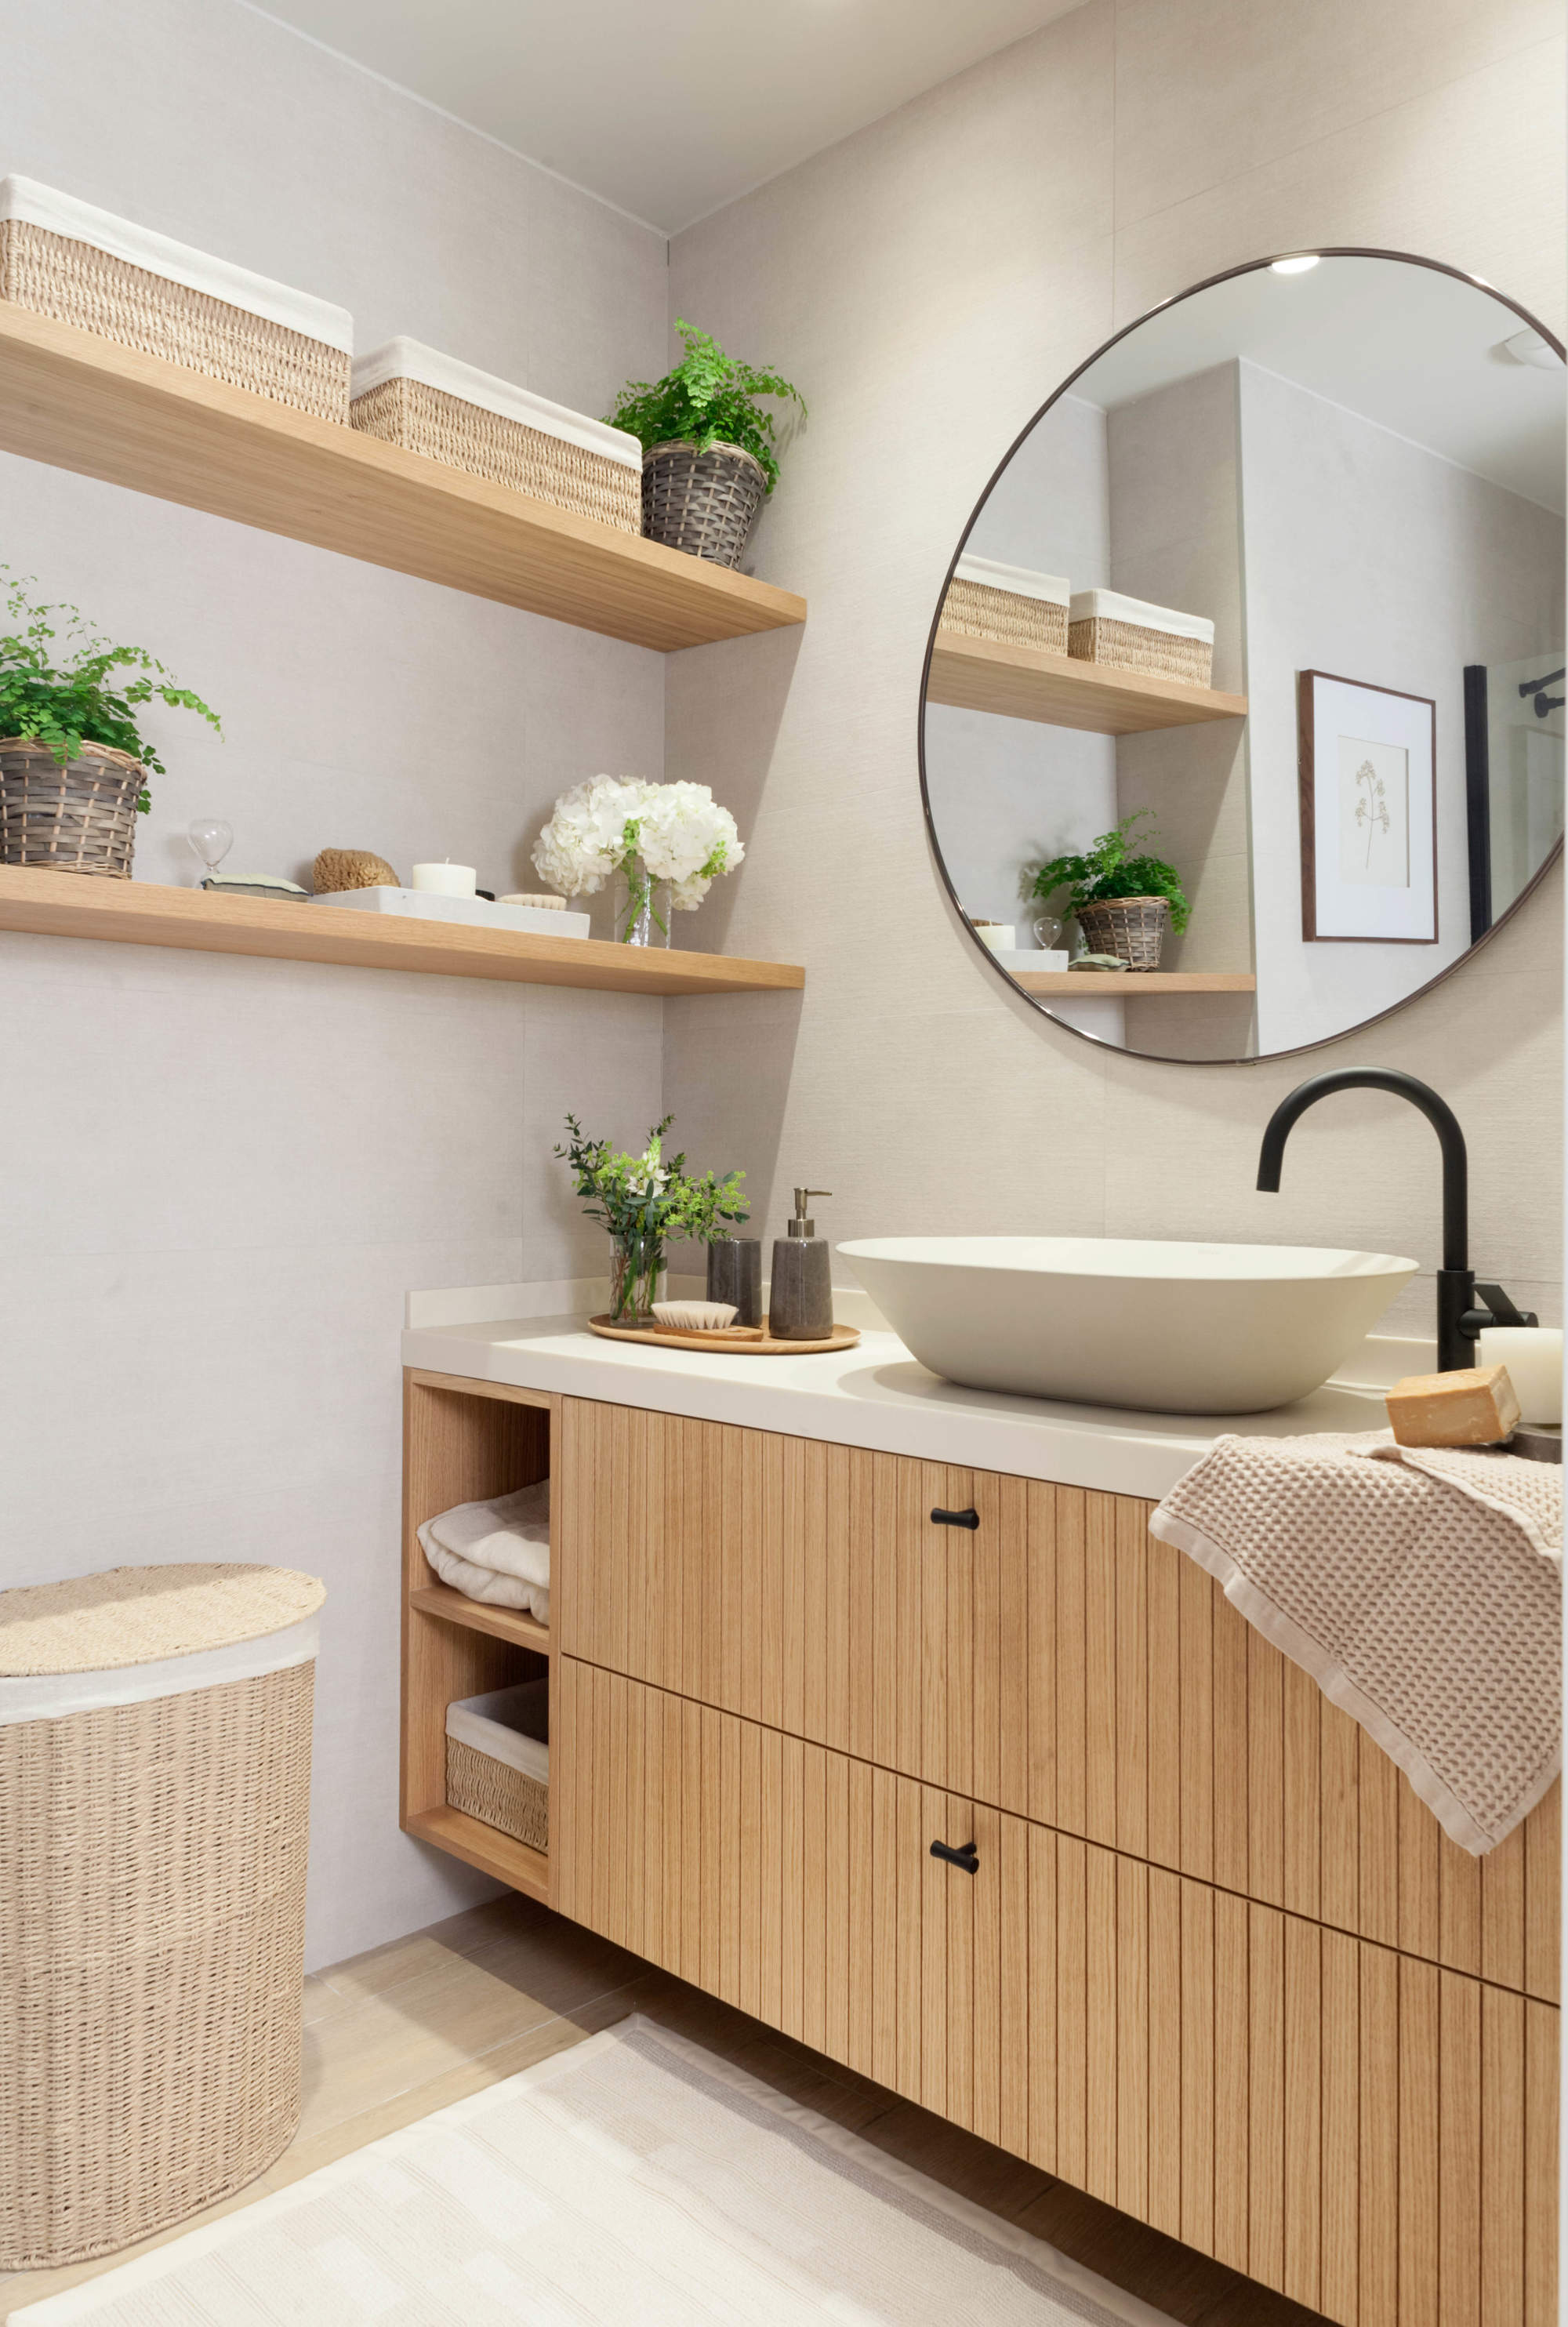 Mueble de madera con encimera blanca: un clásico perfecto para baños modernos.